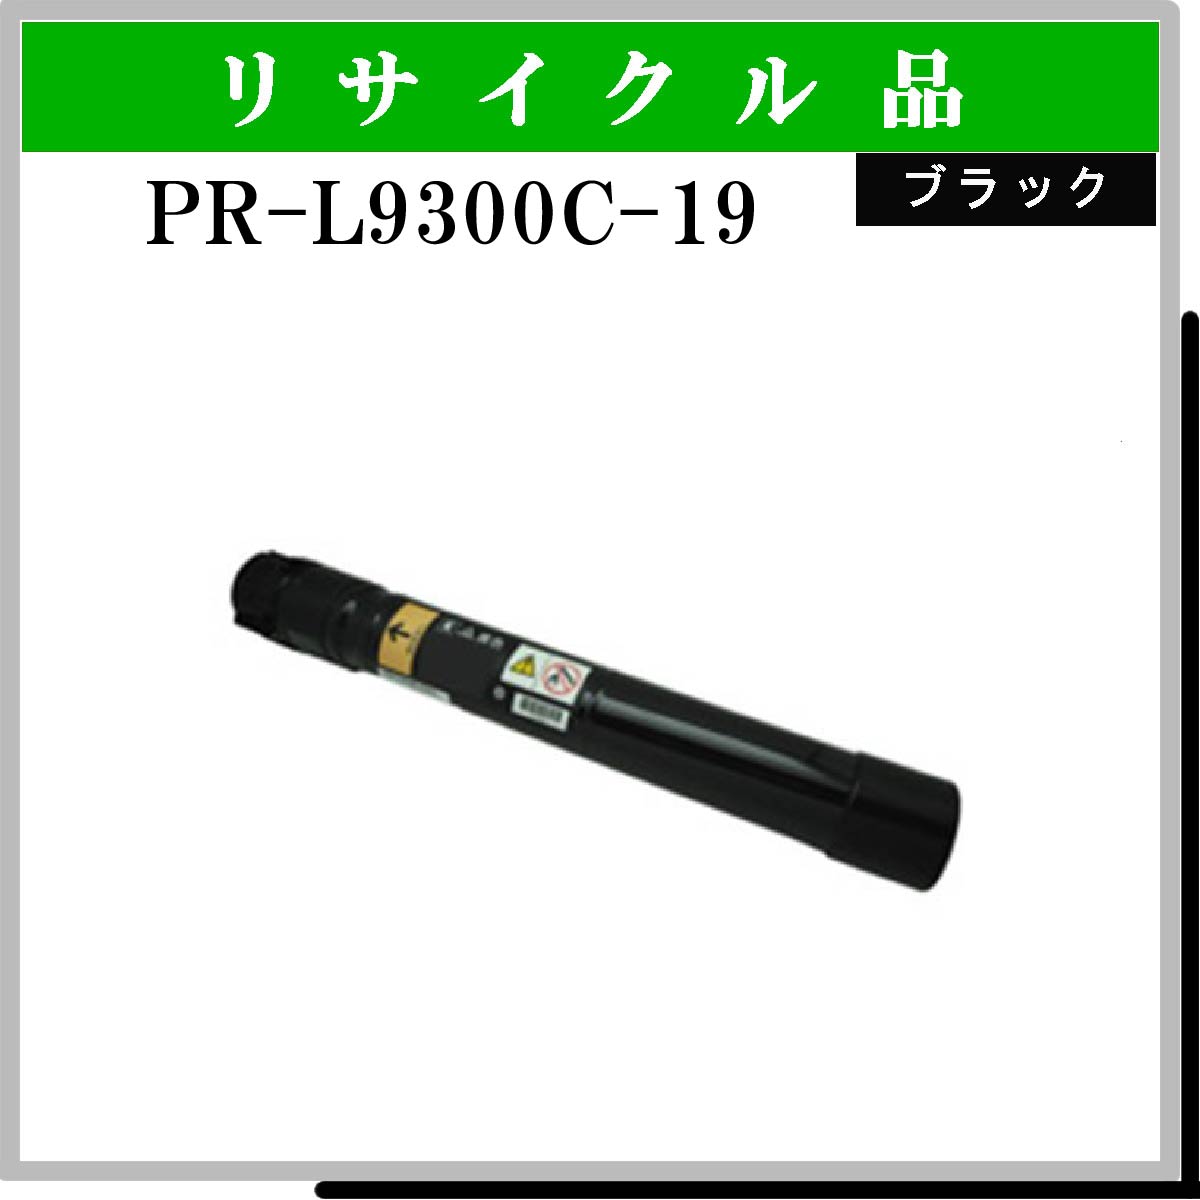 PR-L9300C-19